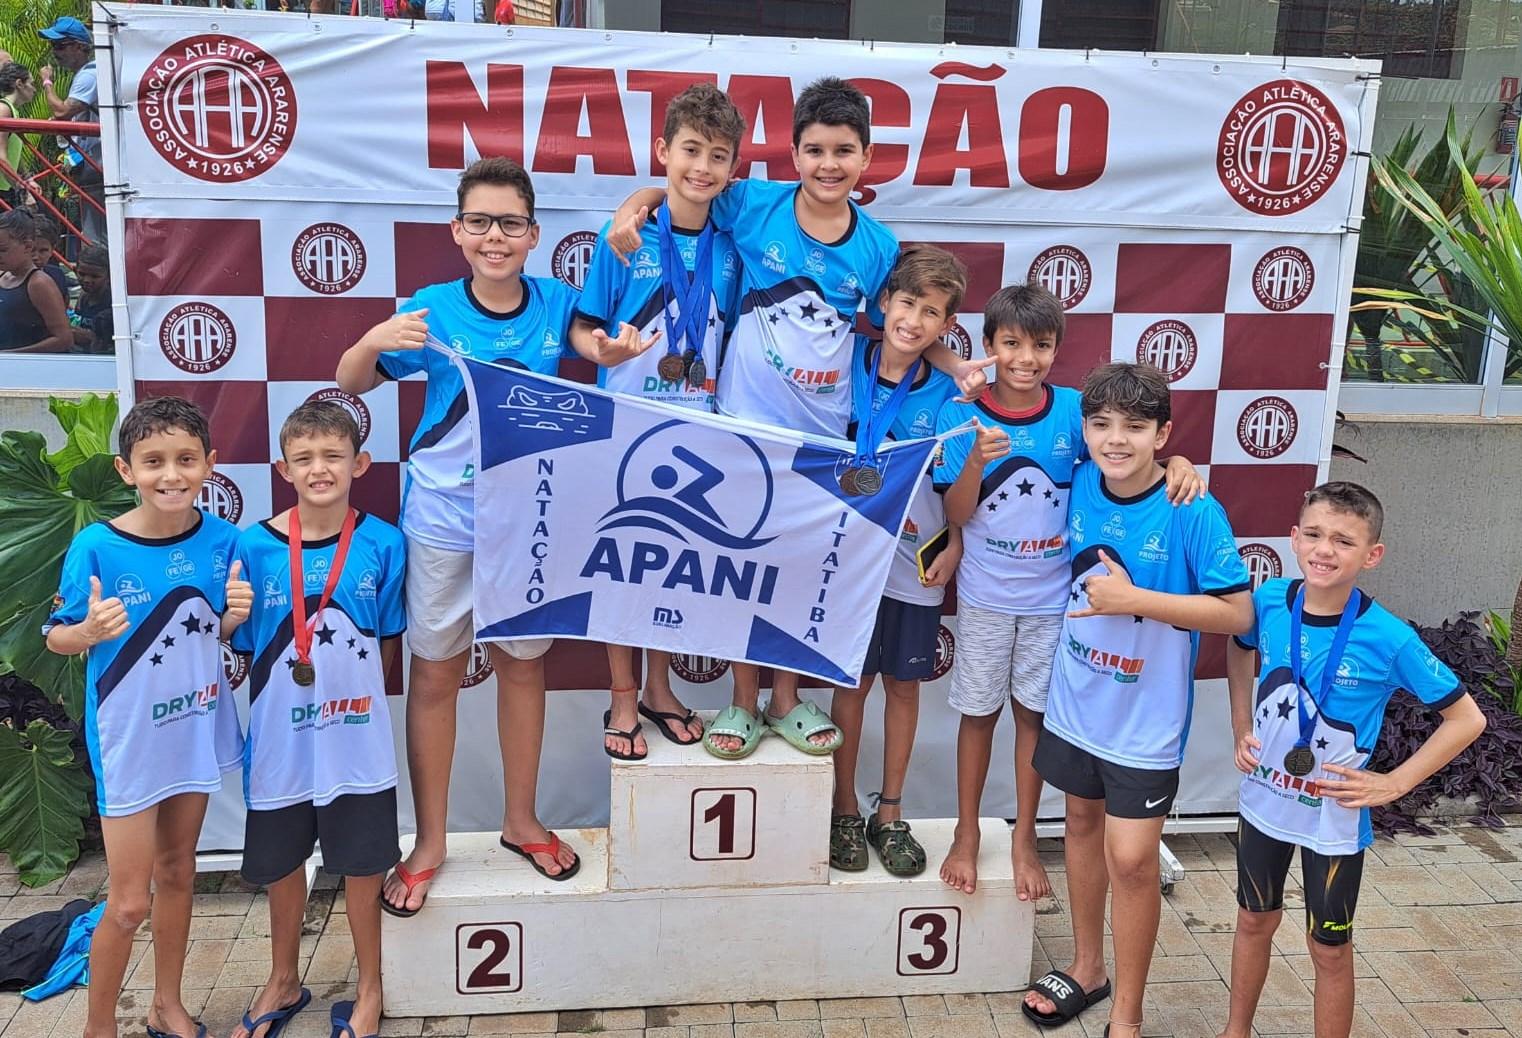 Apan representa Itatiba no Torneio Regional de Natação promovido pela FAP